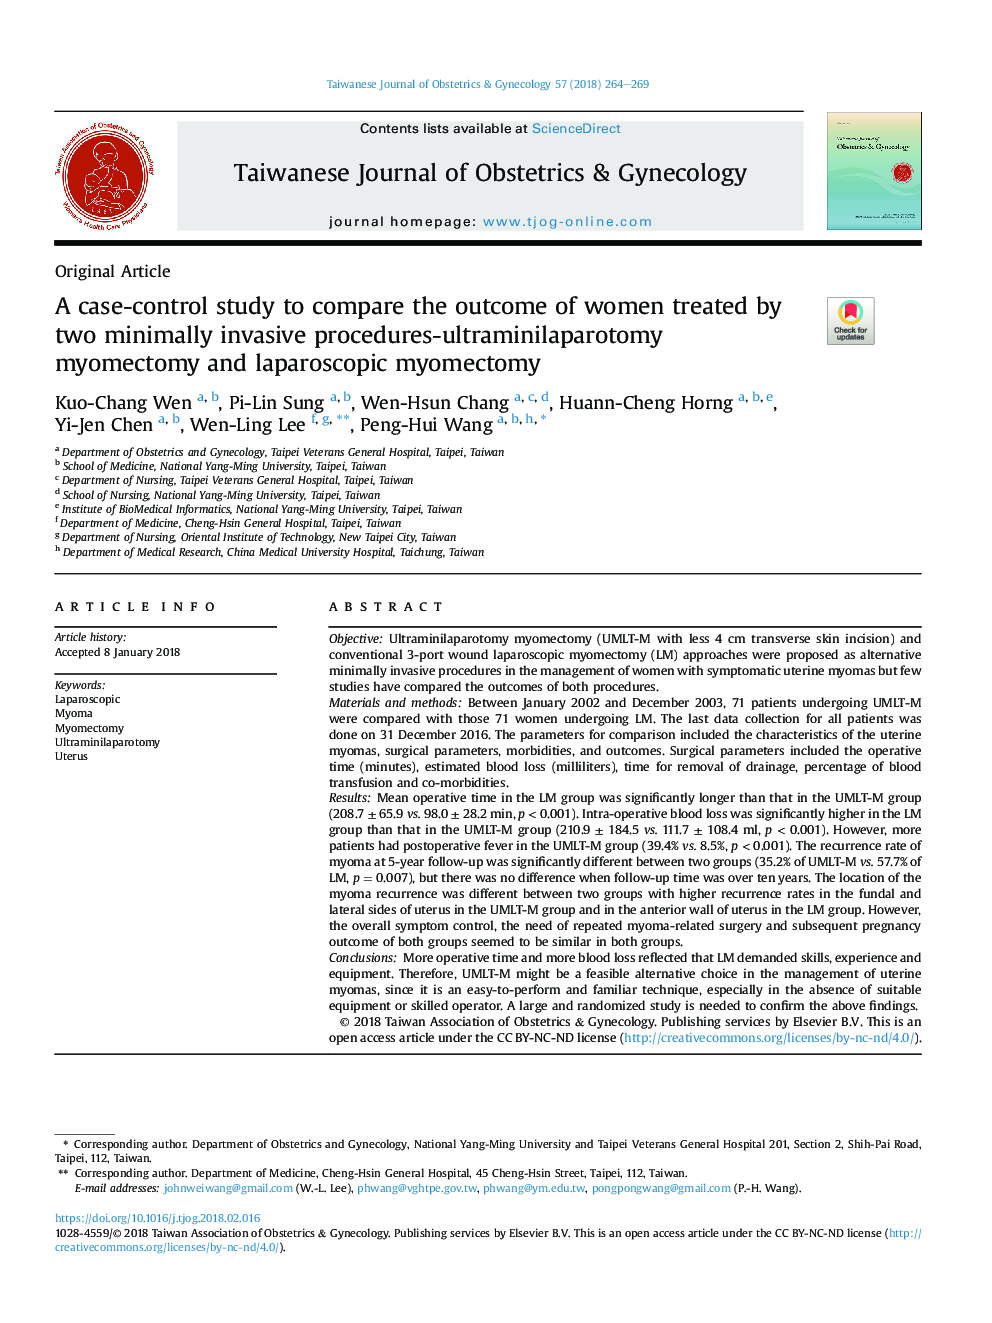 یک مطالعه مورد-شاهدی برای مقایسه نتایج زنان تحت درمان با دو روش حداقل تهاجمی - میومکتومی اولترامینیلاپاروتومی و میکومکتومی لاپاروسکوپی 